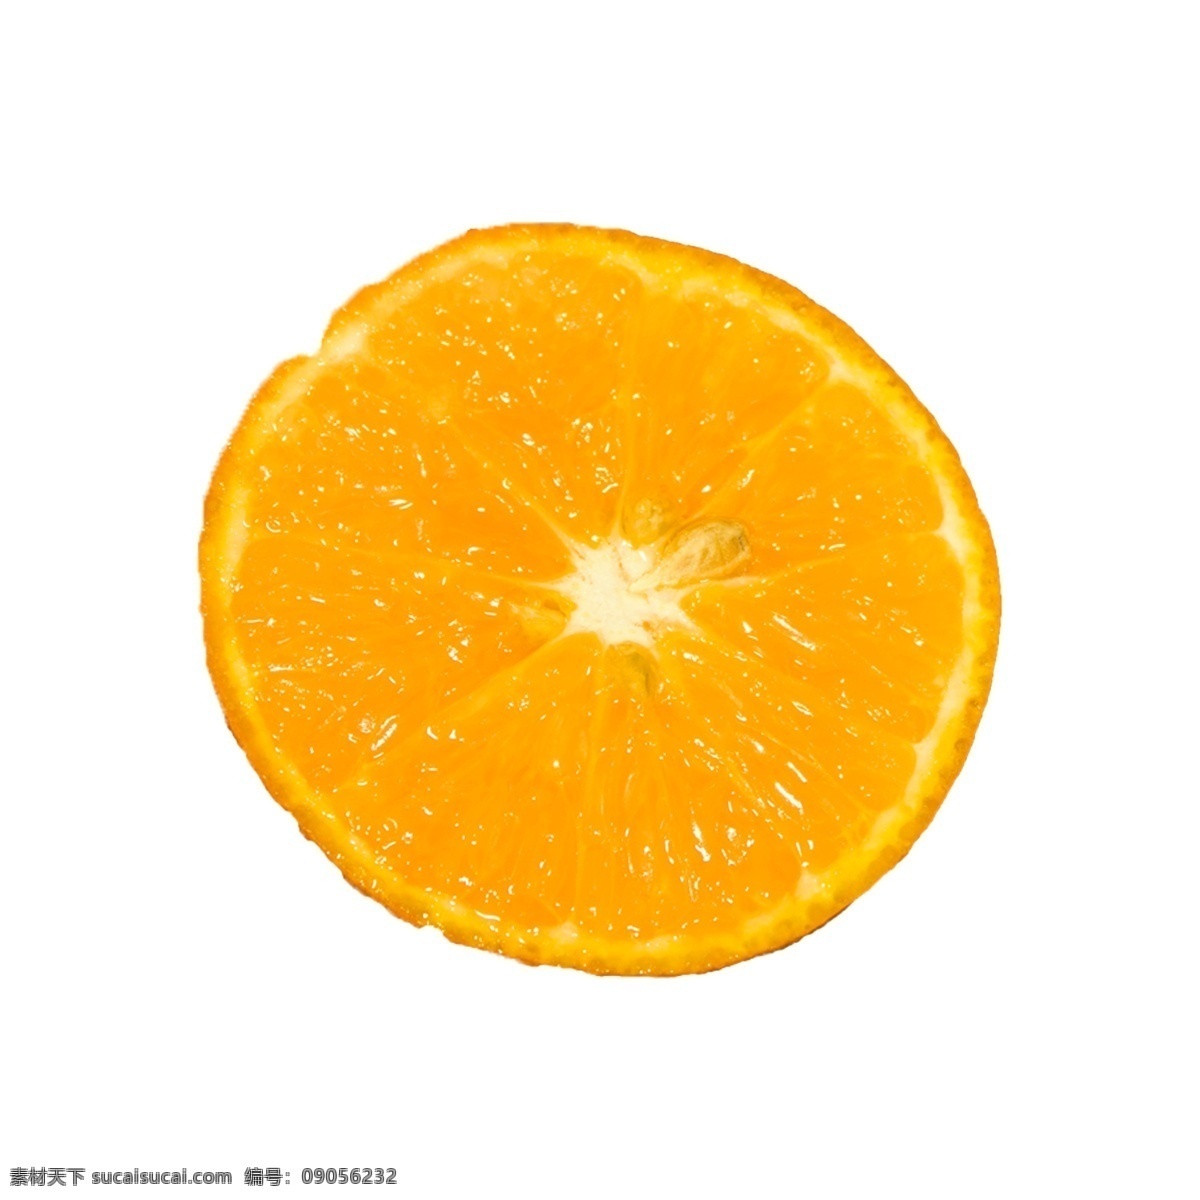 橙子 实物 实拍 免 抠 水果 实物拍摄 橙子免抠 新鲜 营养 甜橙 水润多汁 植物 橙色 摆拍 维生素